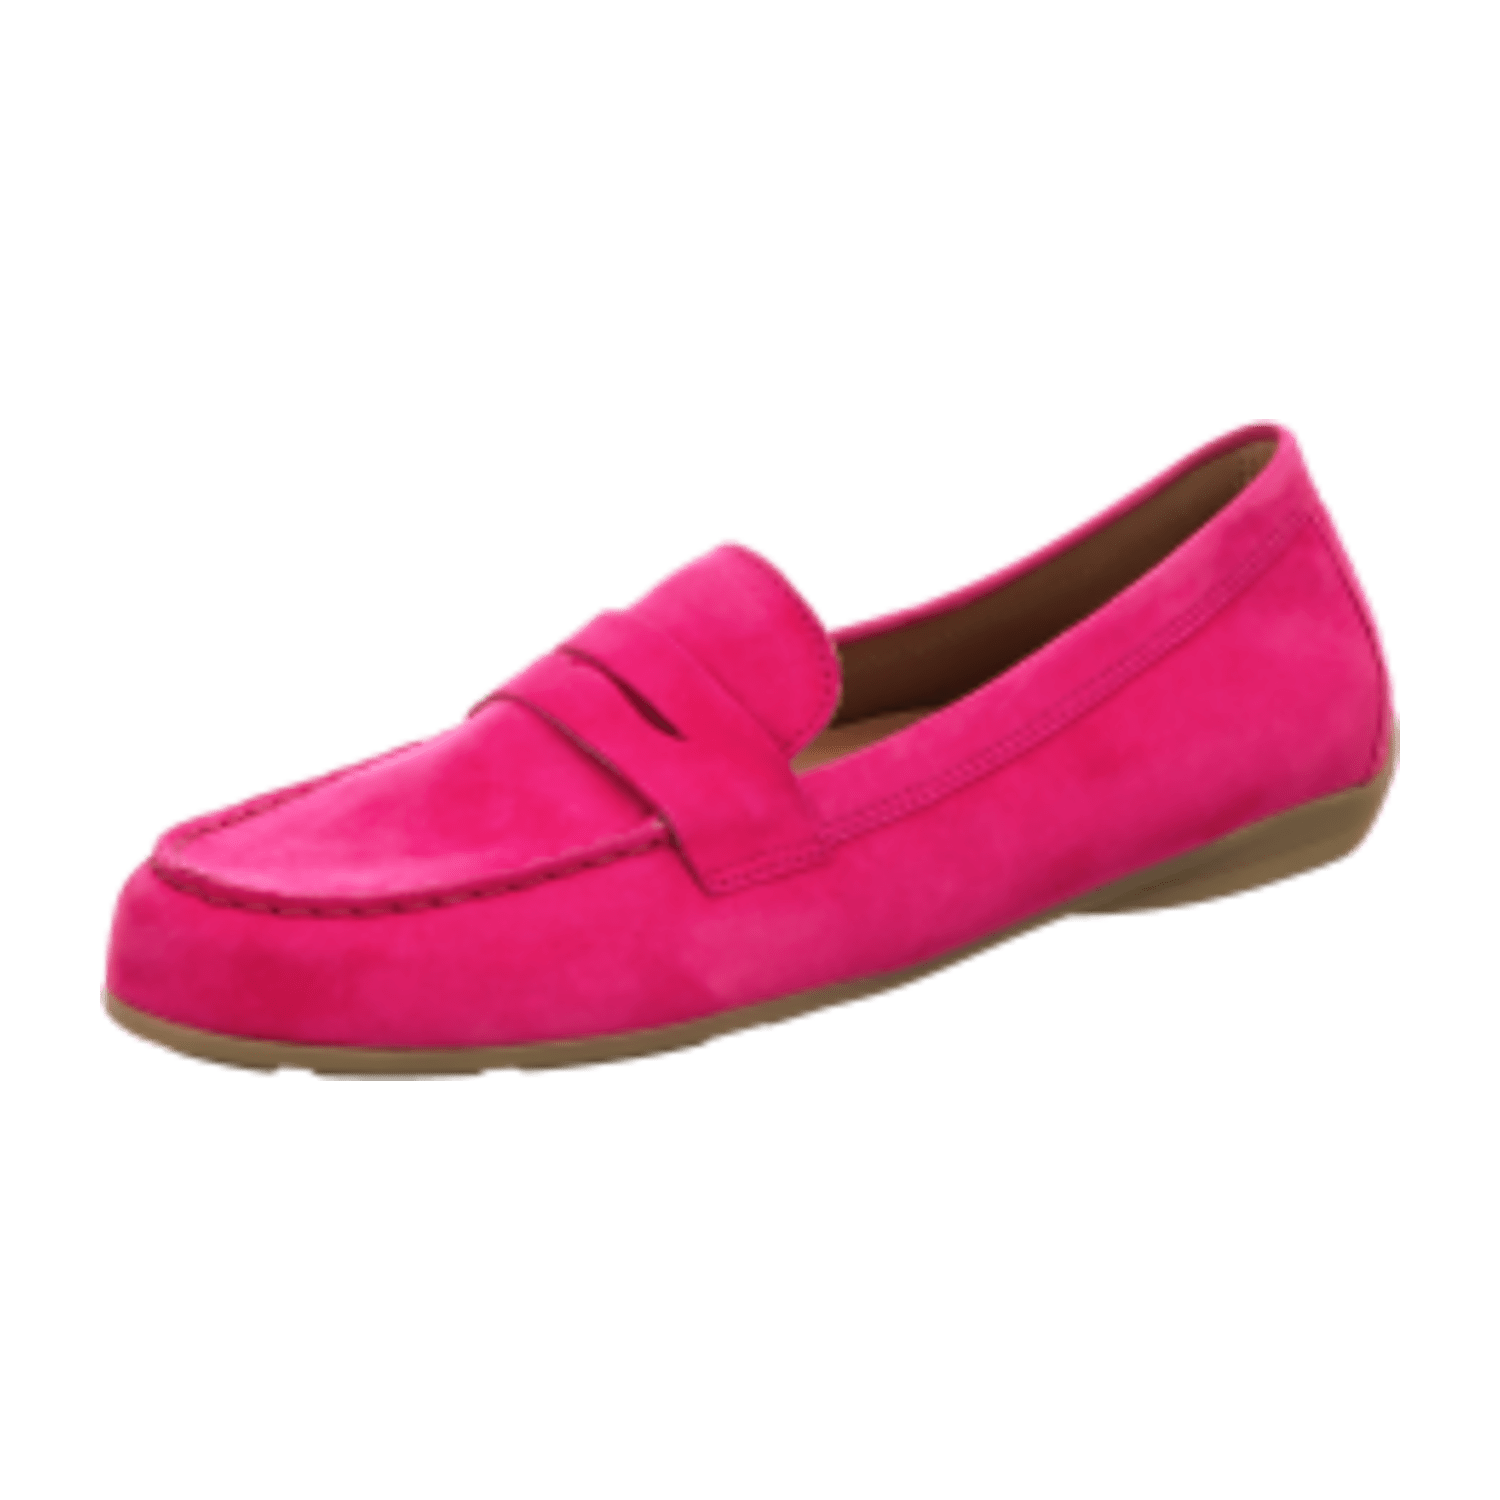 Gabor Schuhe Mokassin Slipper pink 44.200.10